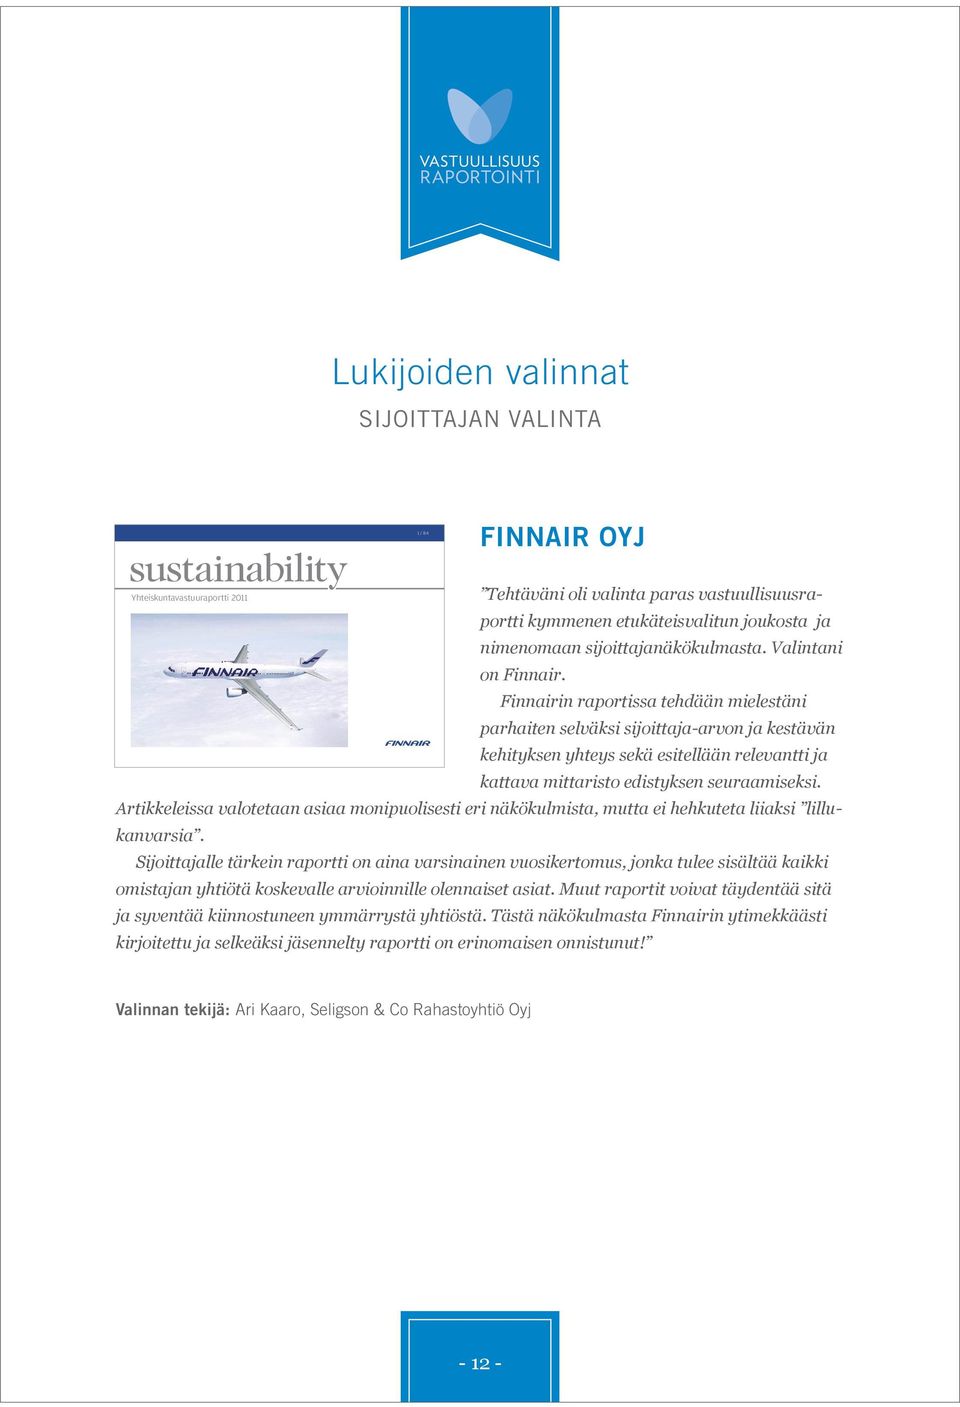 Finnairin raportissa tehdään mielestäni parhaiten selväksi sijoittaja-arvon ja kestävän kehityksen yhteys sekä esitellään relevantti ja kattava mittaristo edistyksen seuraamiseksi.